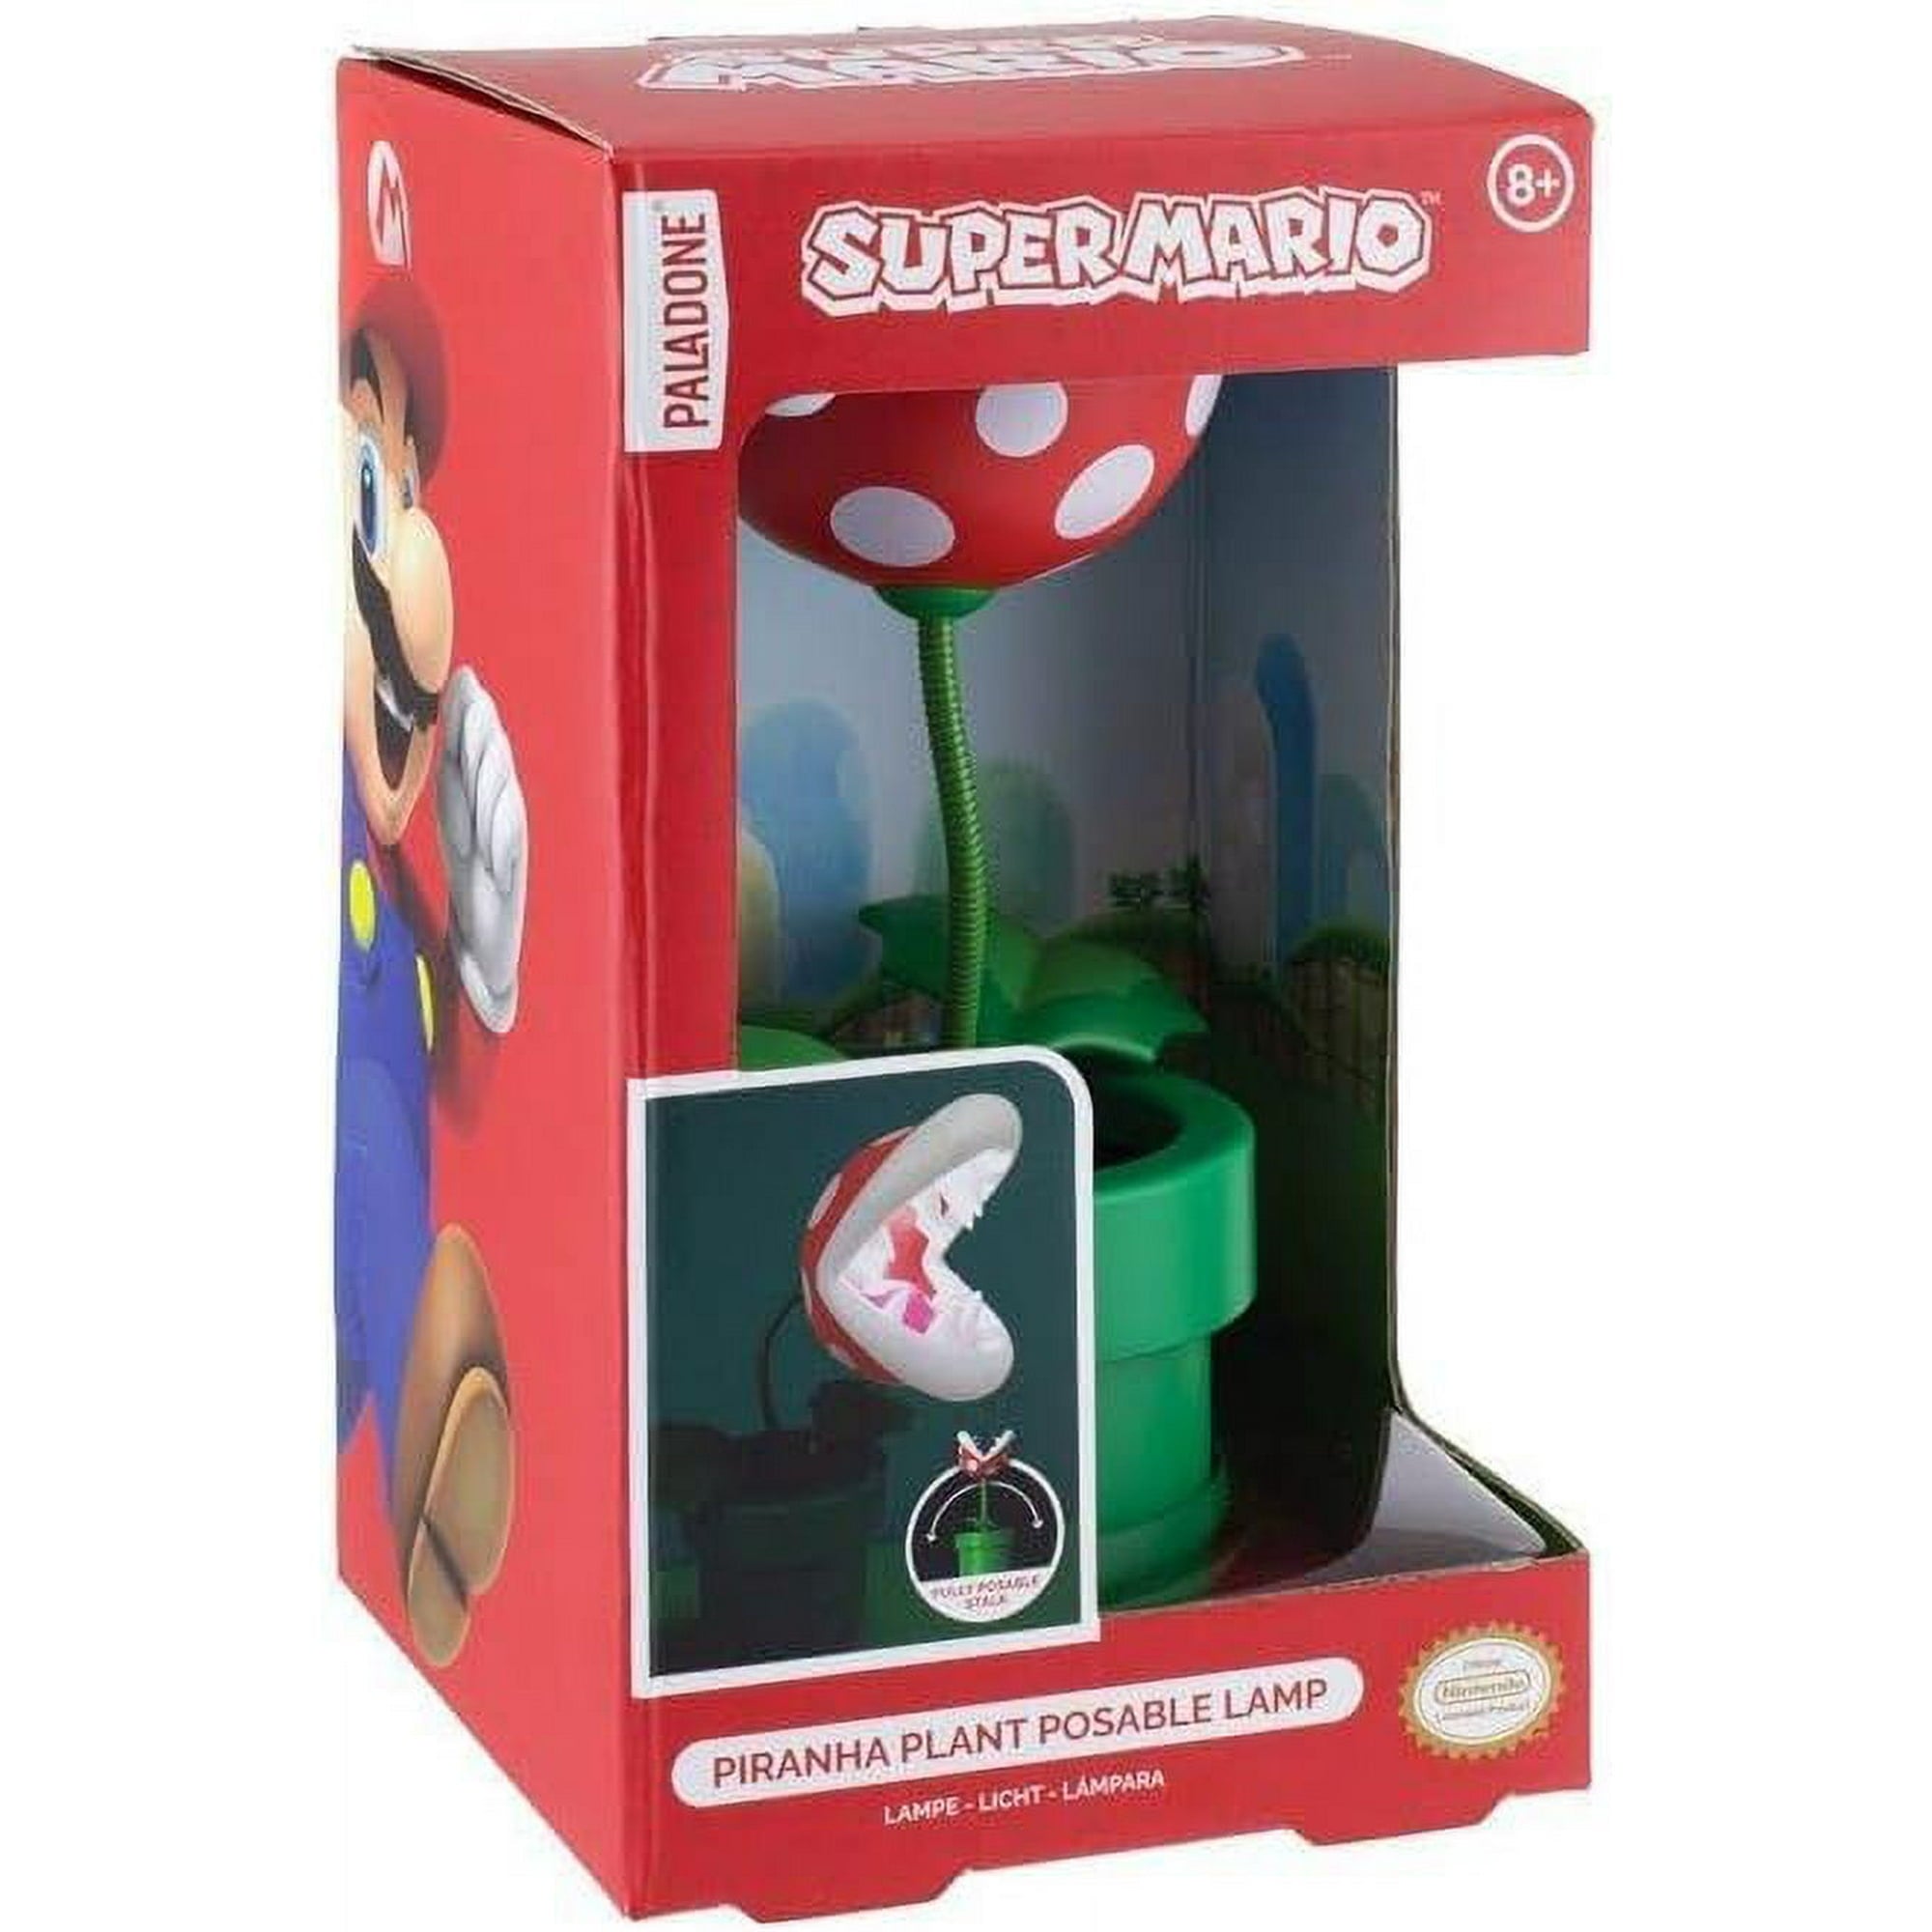 Super Mario Mini Piranha Plant Posable Lamp